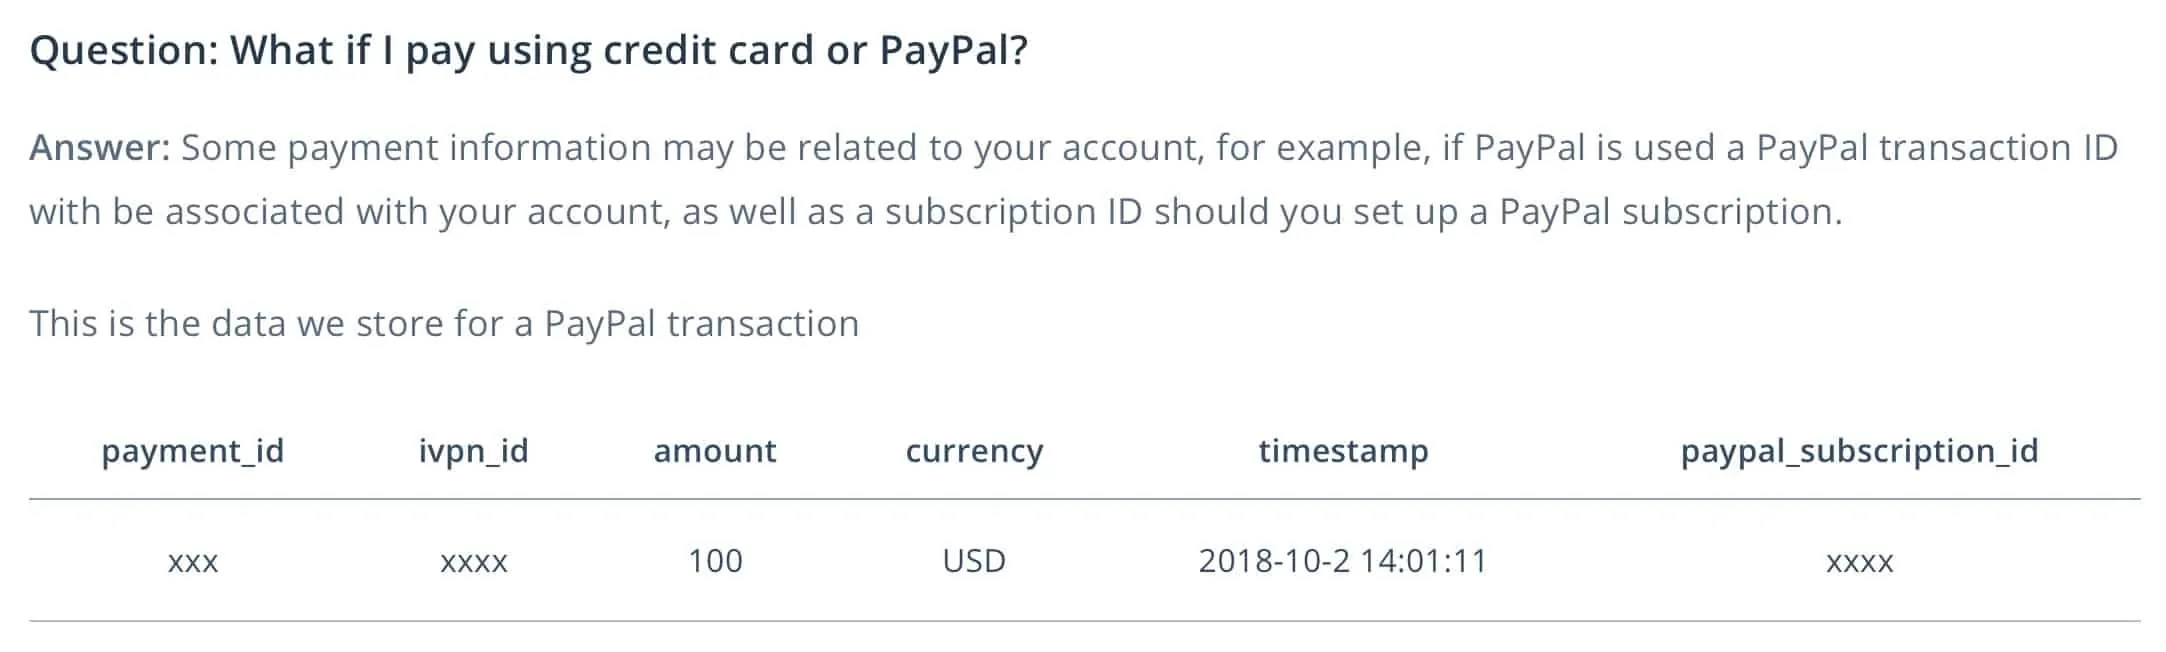 iVPN - PayPal